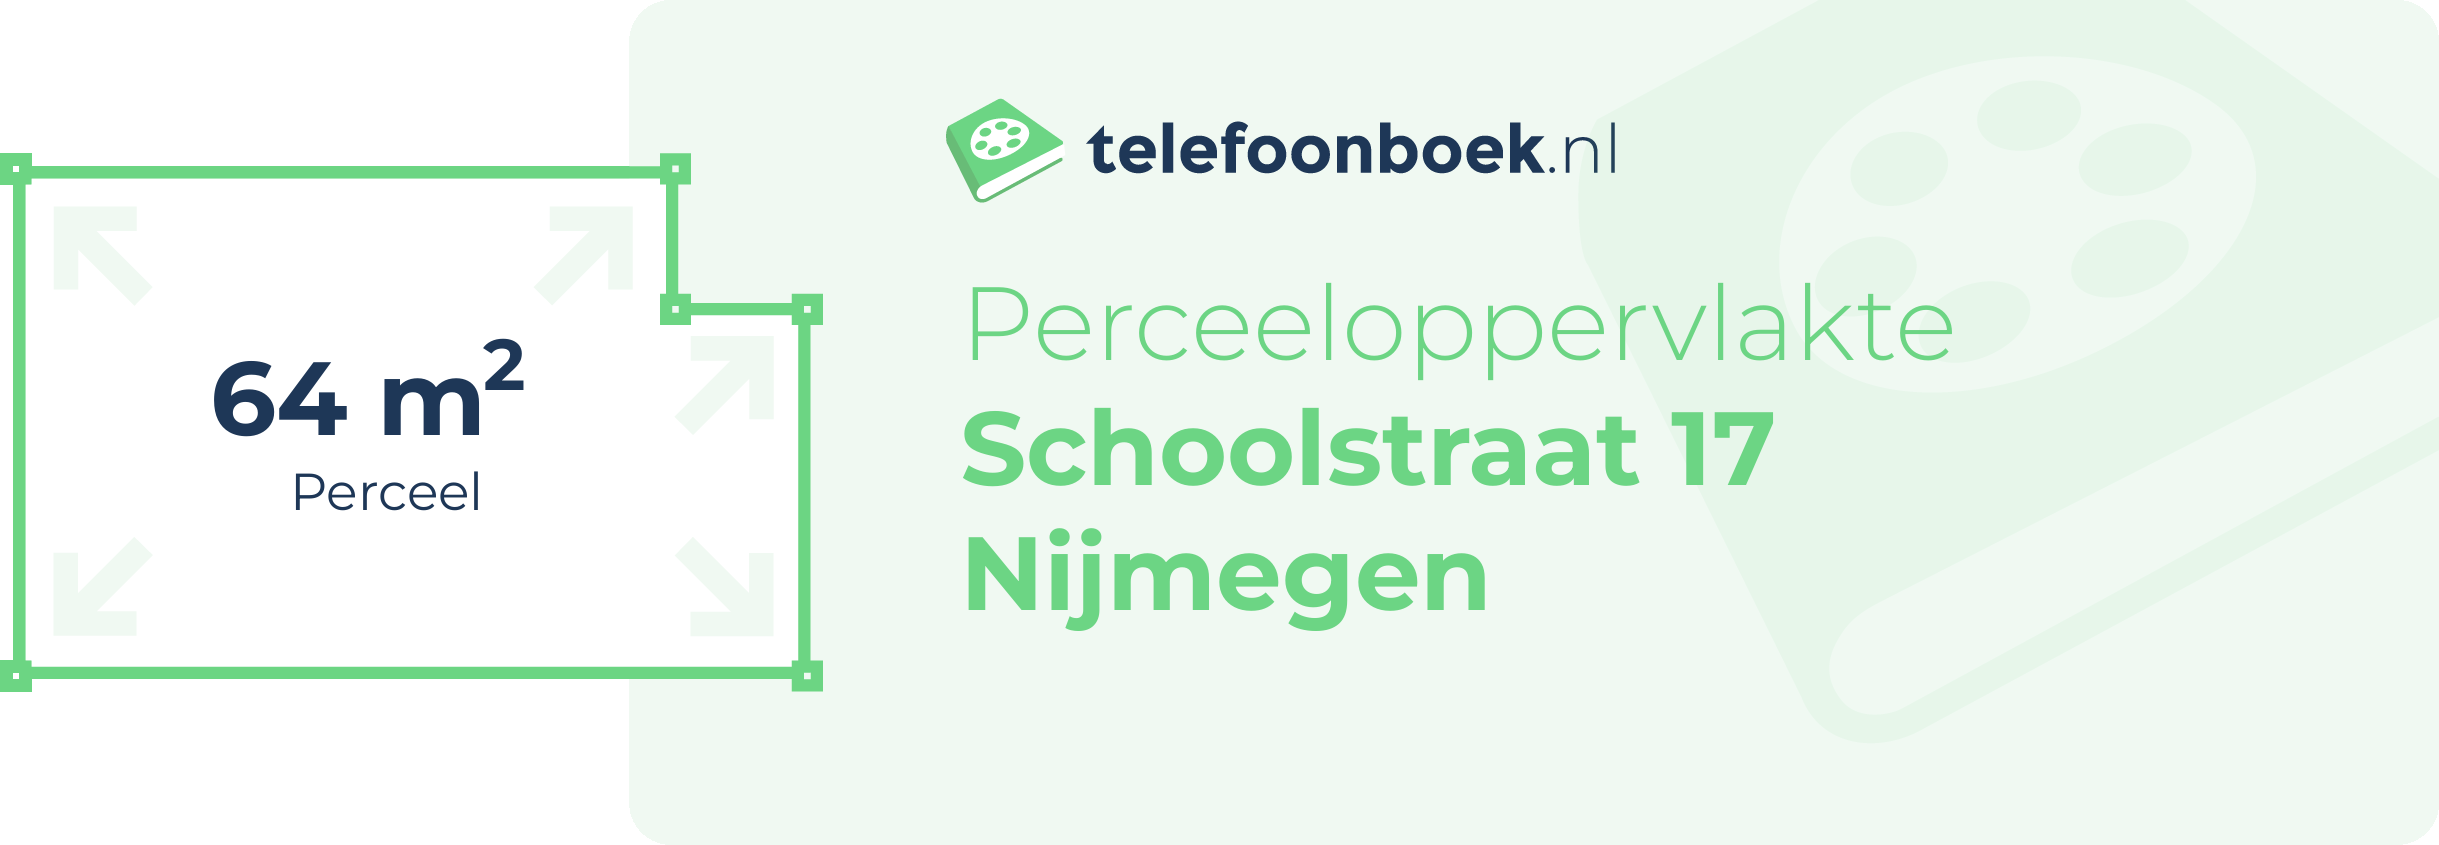 Perceeloppervlakte Schoolstraat 17 Nijmegen